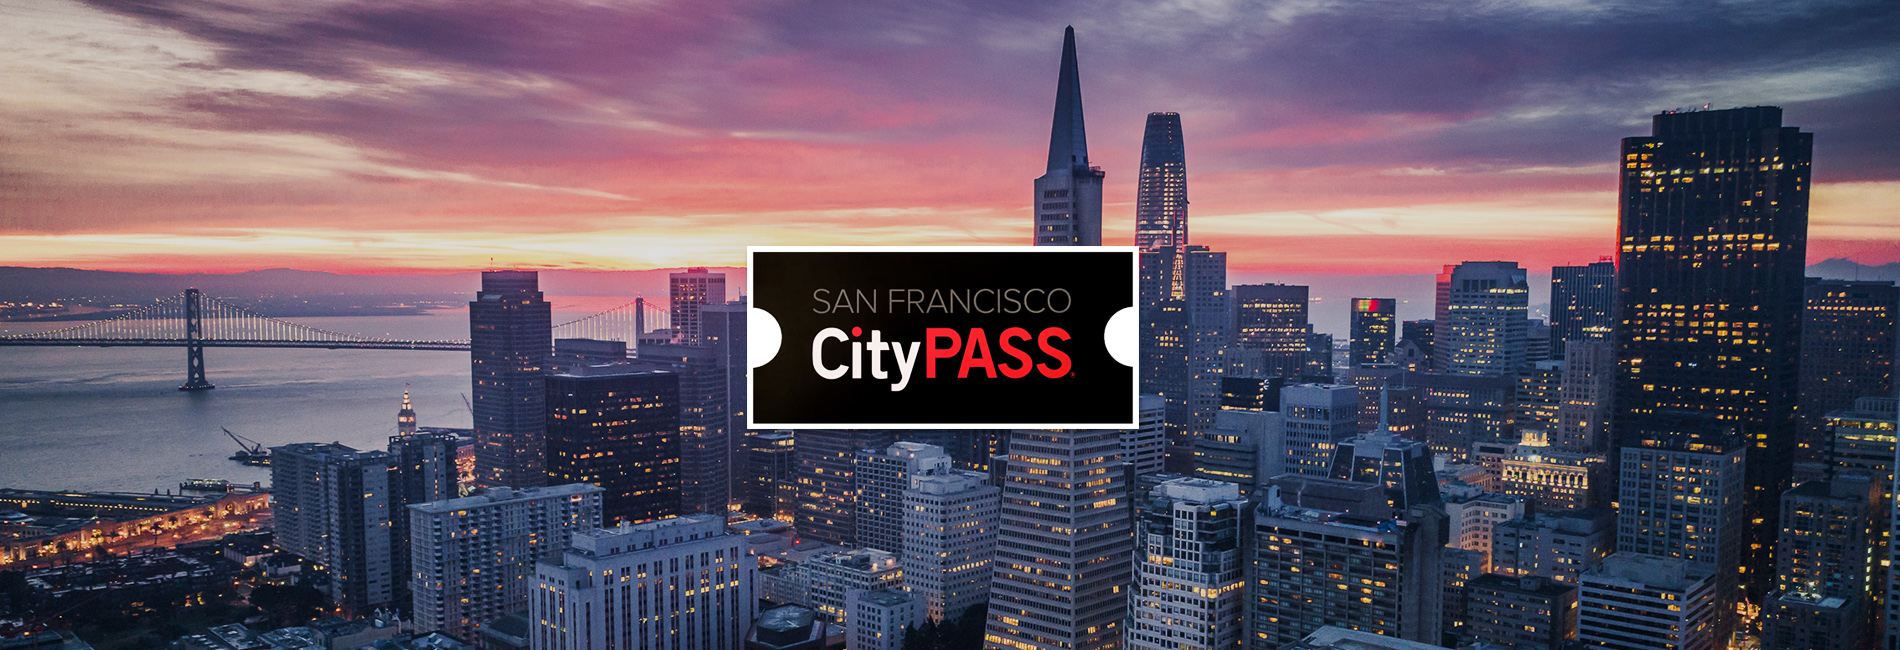 【【任選四大舊金山必去景點】舊金山城市通行證 SAN FRANCISCO CityPASS